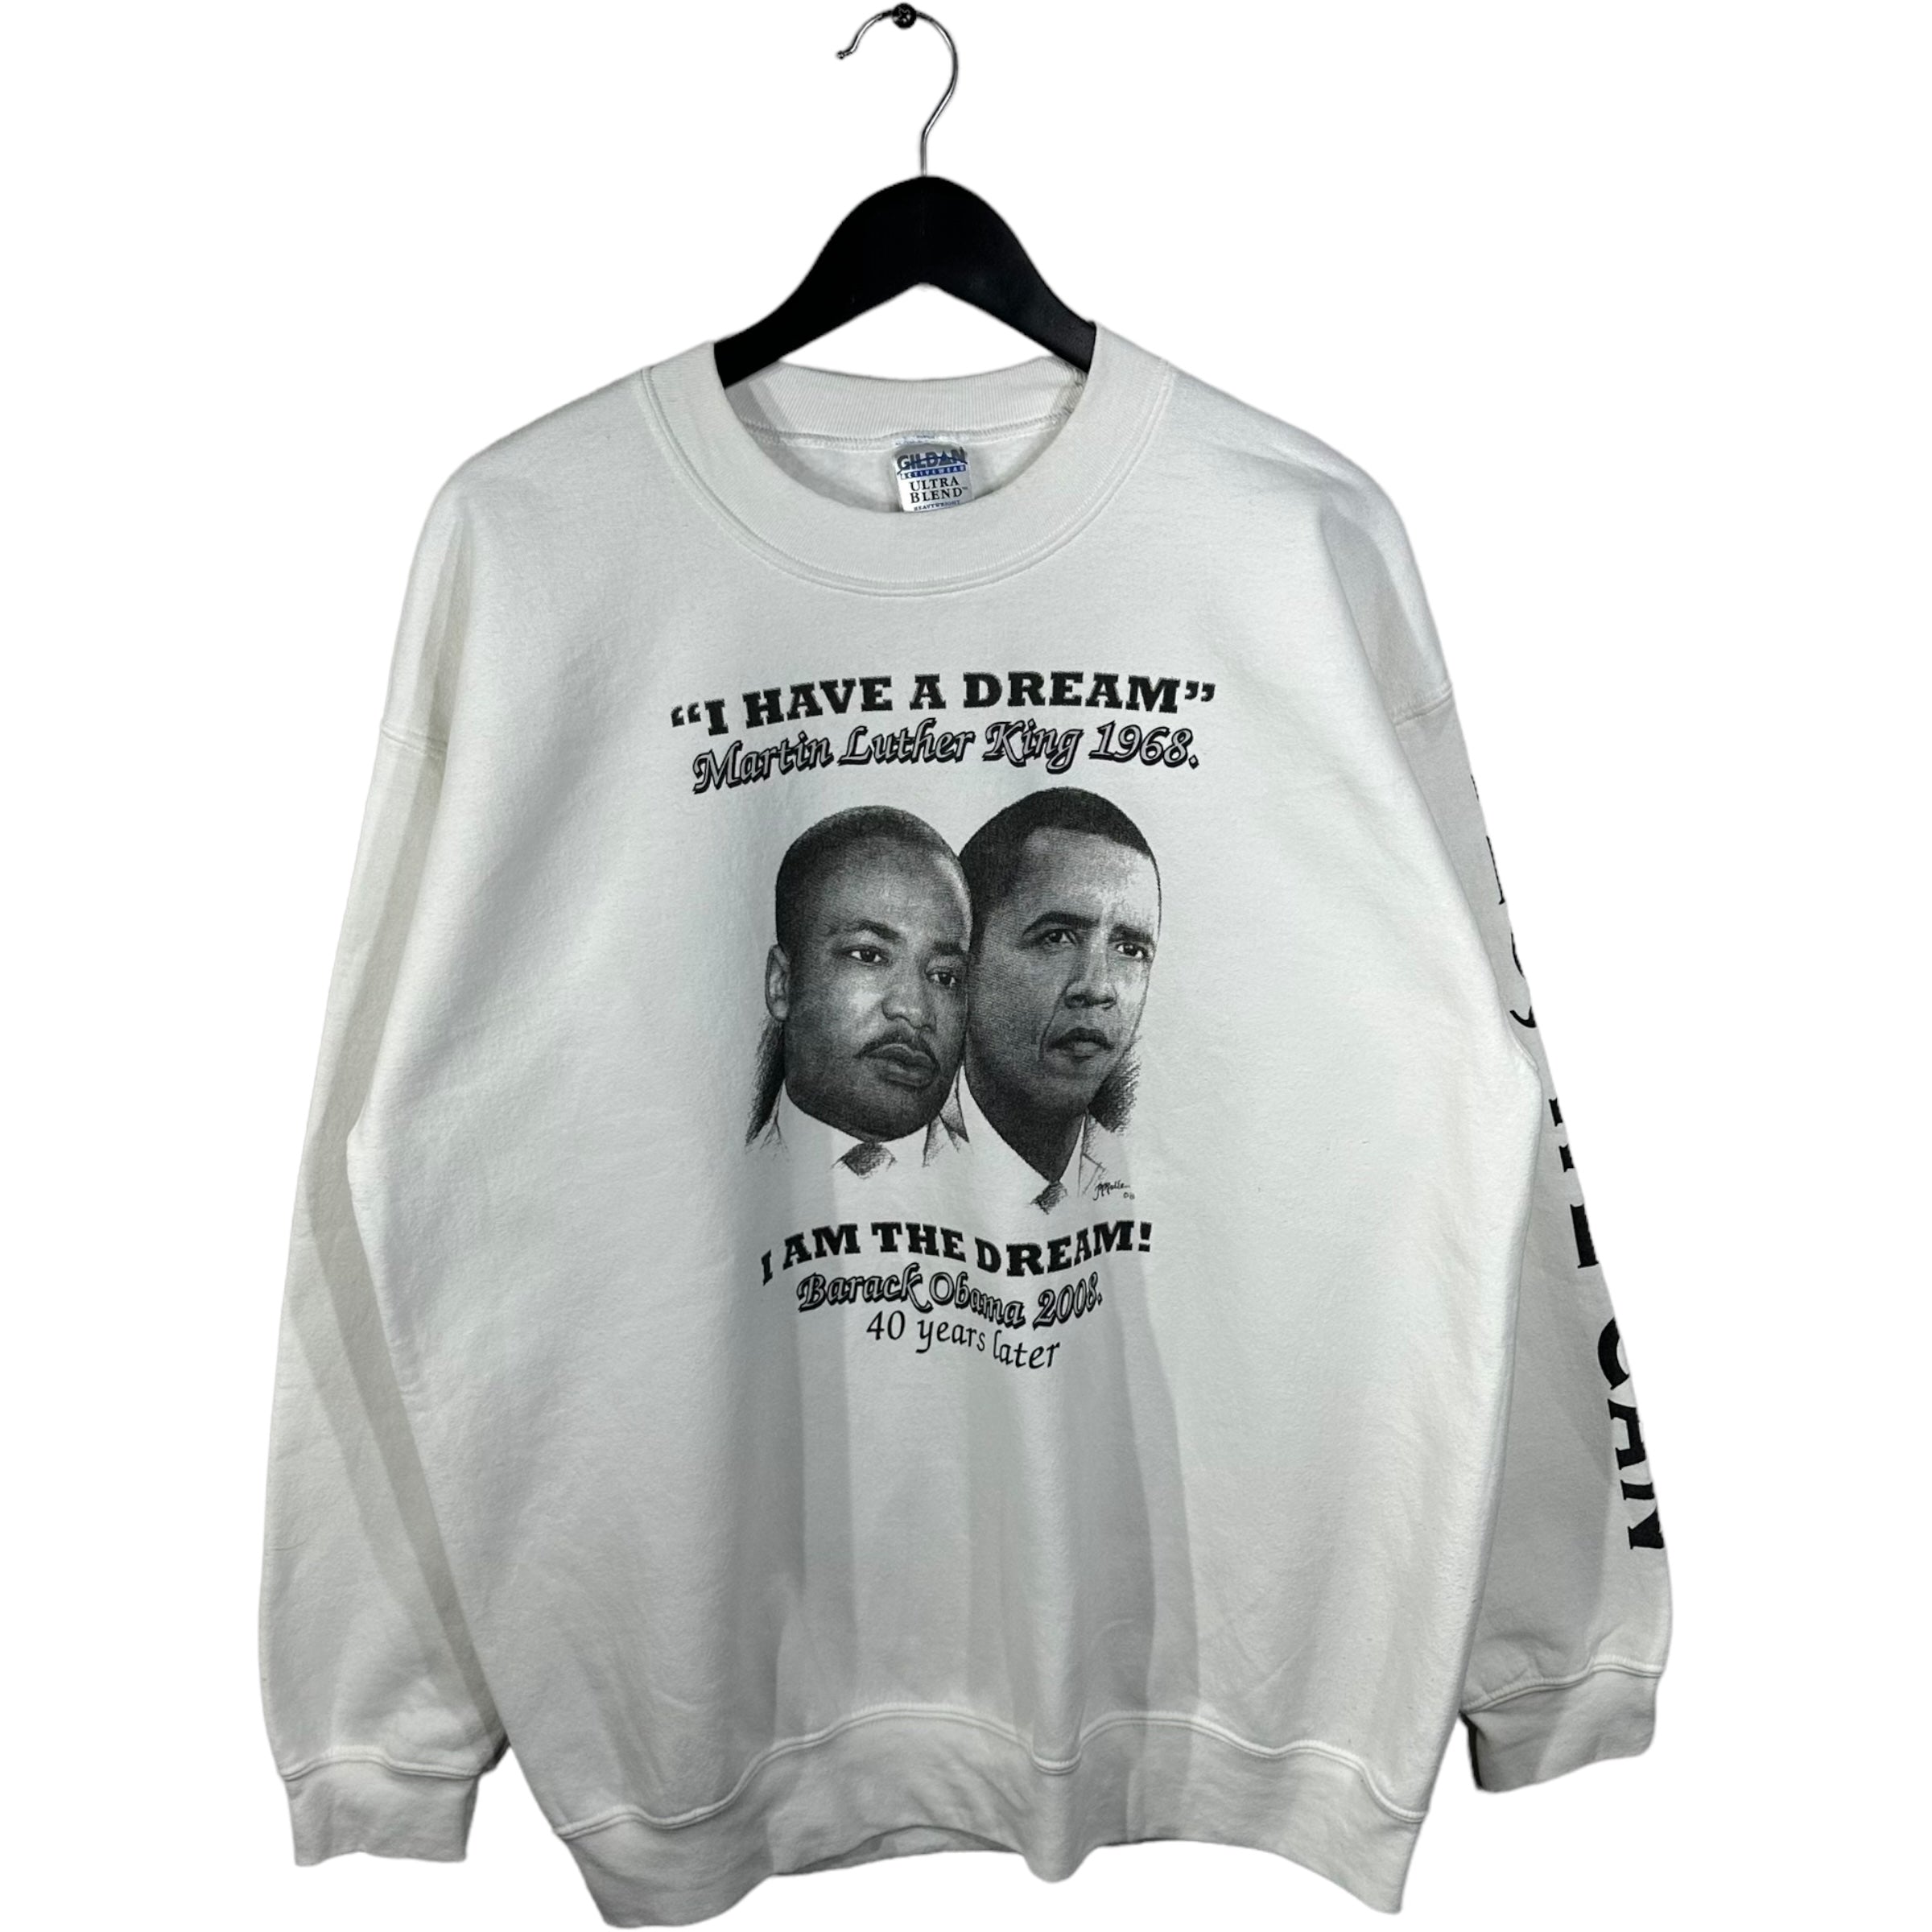 Martin Luther King Jr & Obama "I Have A Dream" Crewneck 2008